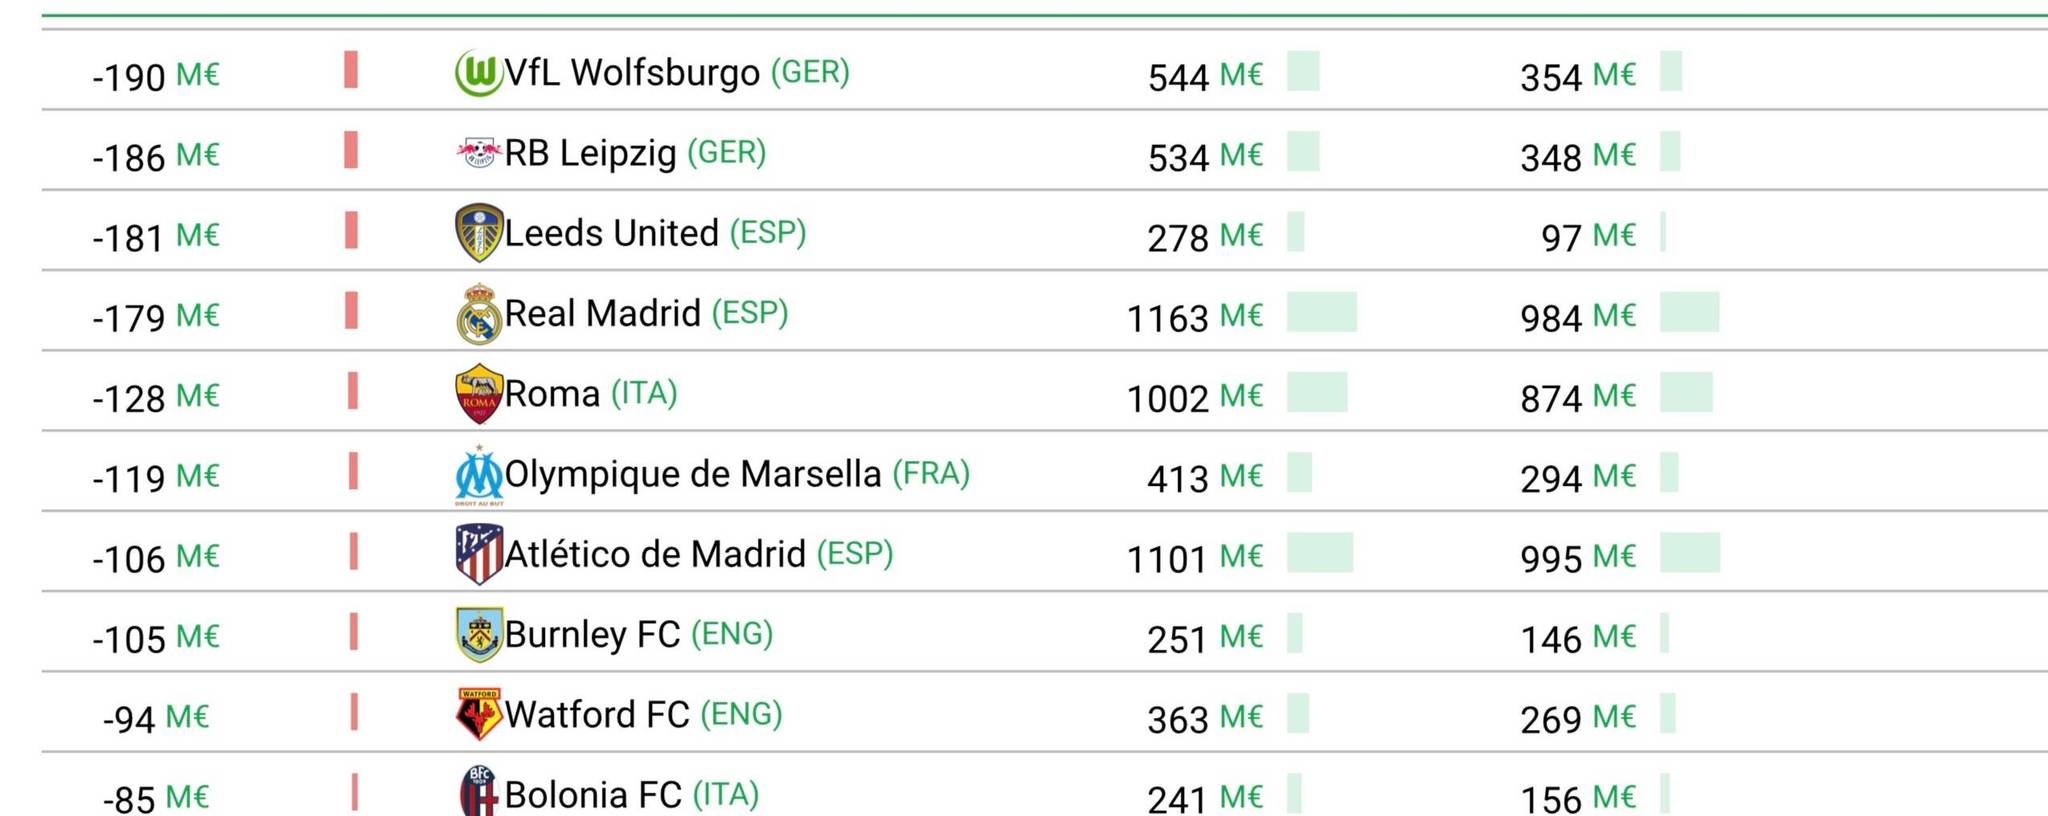 Barcelona registra el gasto neto más alto de cualquier club de LaLiga en la última década